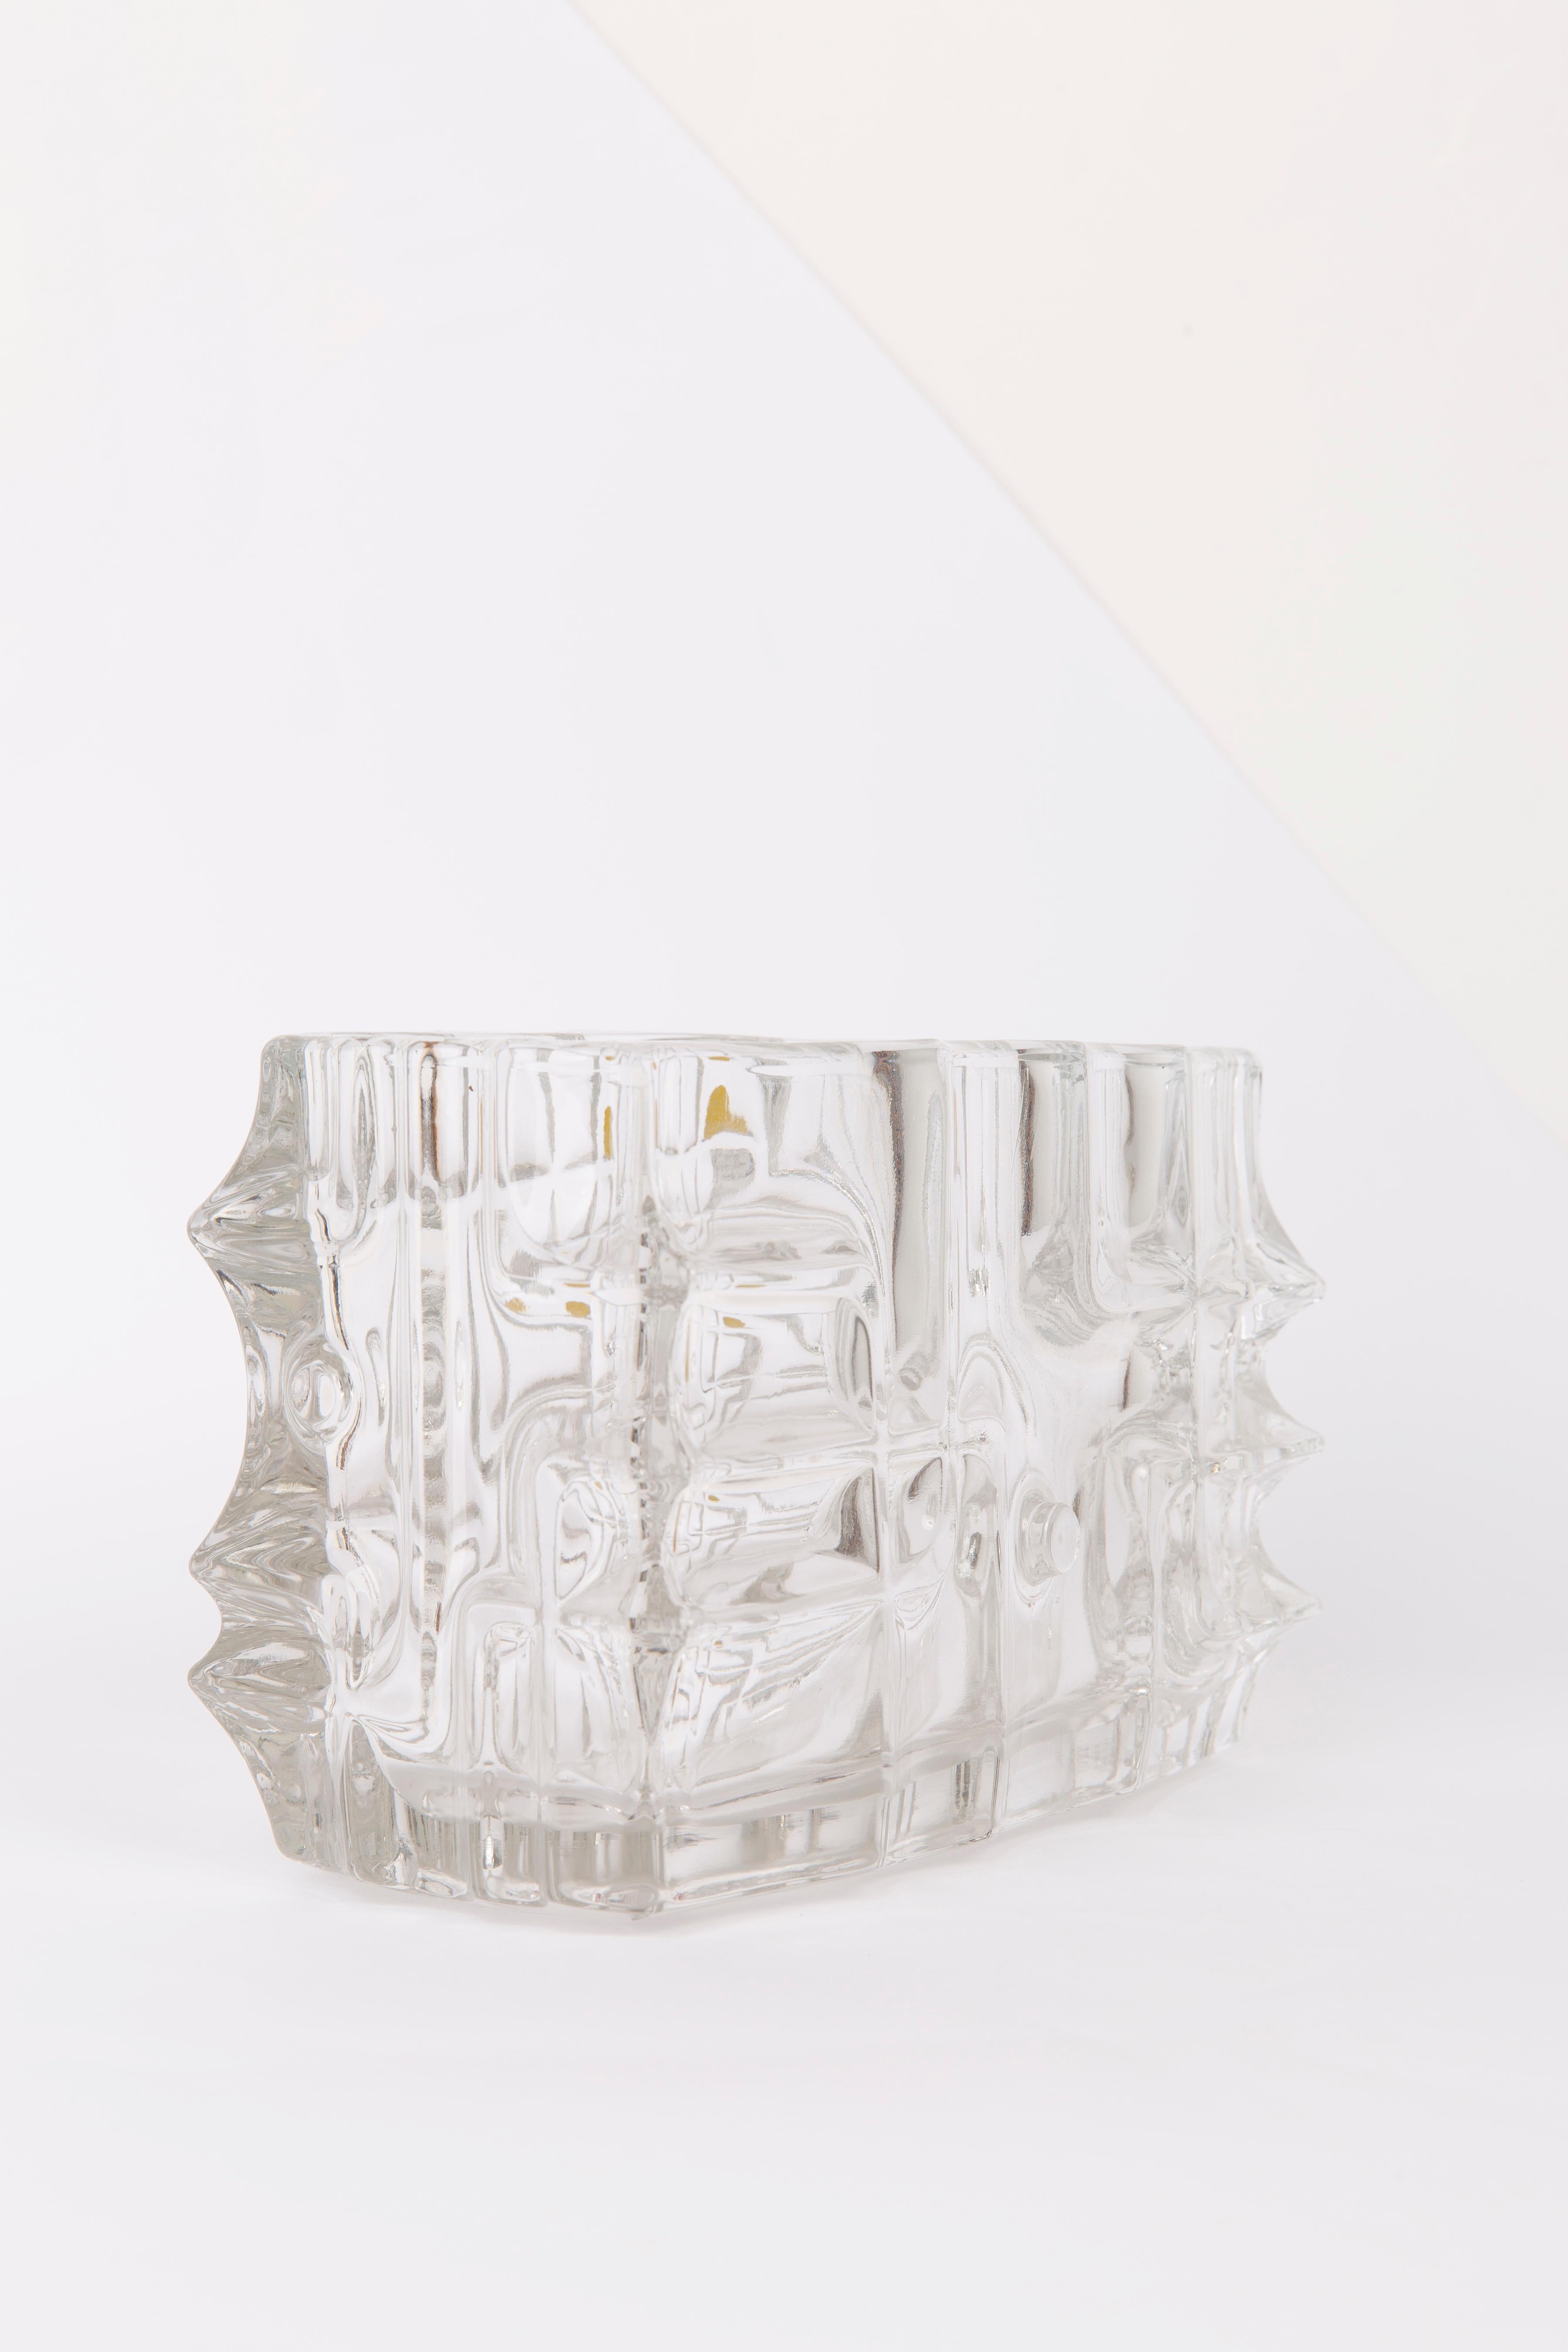 Weiße weiße Vase von Vladislav Urban für die Sklo Union, 20. Jahrhundert, Europa, 1960er Jahre (Moderne der Mitte des Jahrhunderts) im Angebot